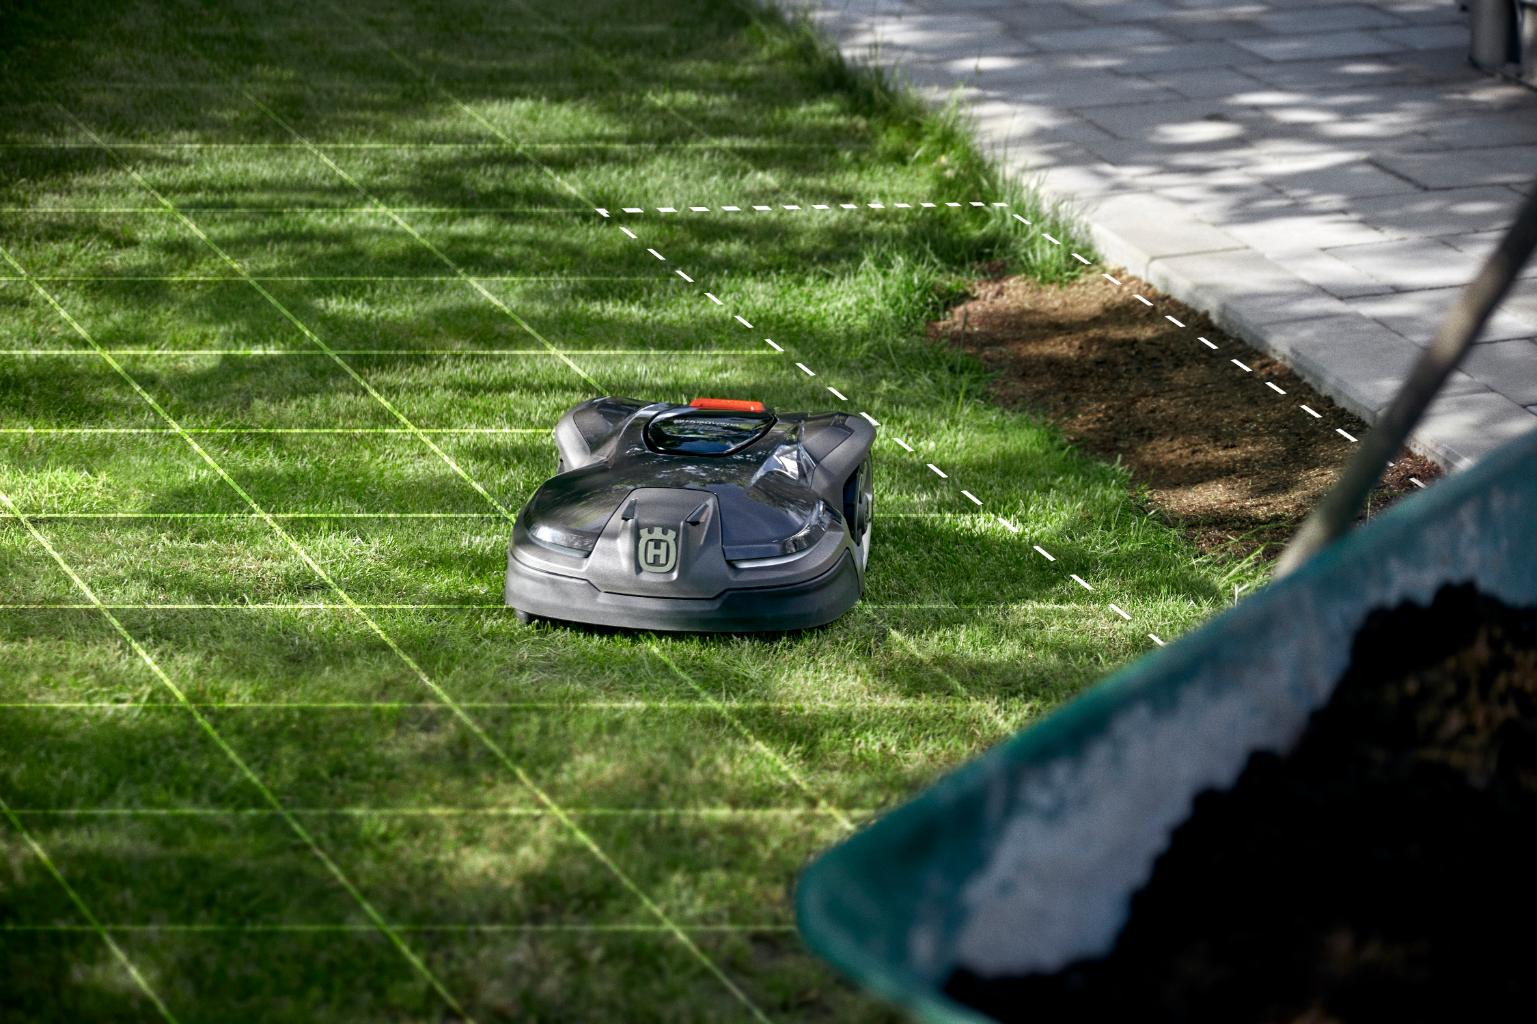 Robot koszący trawnik poprawia jakość trawy. (Fot. baza własna Husqvarna)